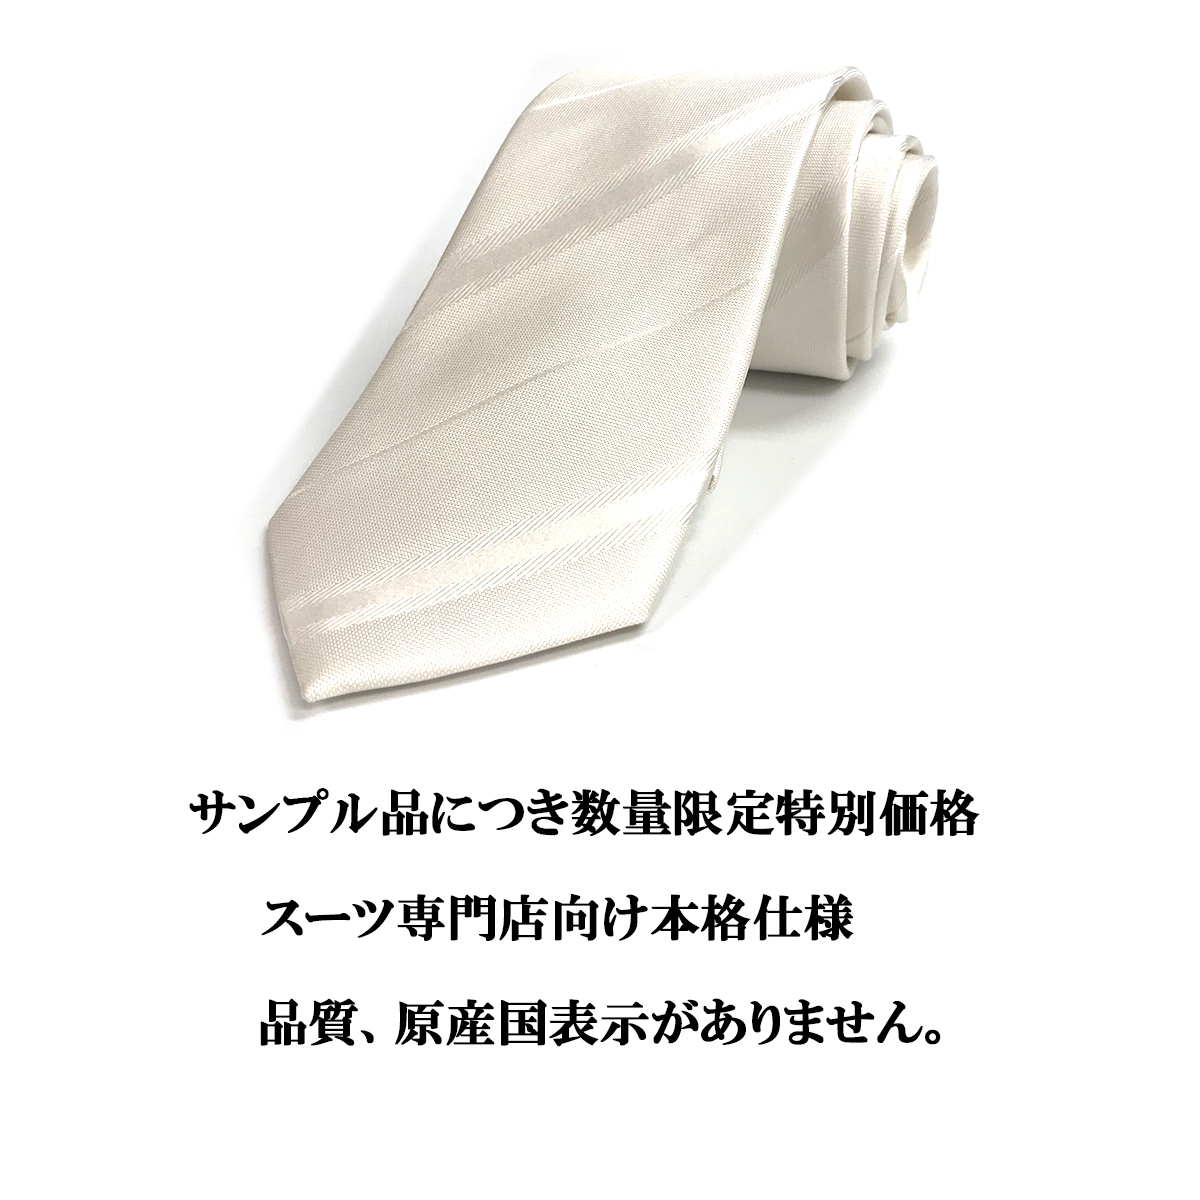  галстук формальный есть перевод свадьба брак .... одежда для тип . мужской праздничные обряды постоянный почтовая доставка бесплатная доставка 